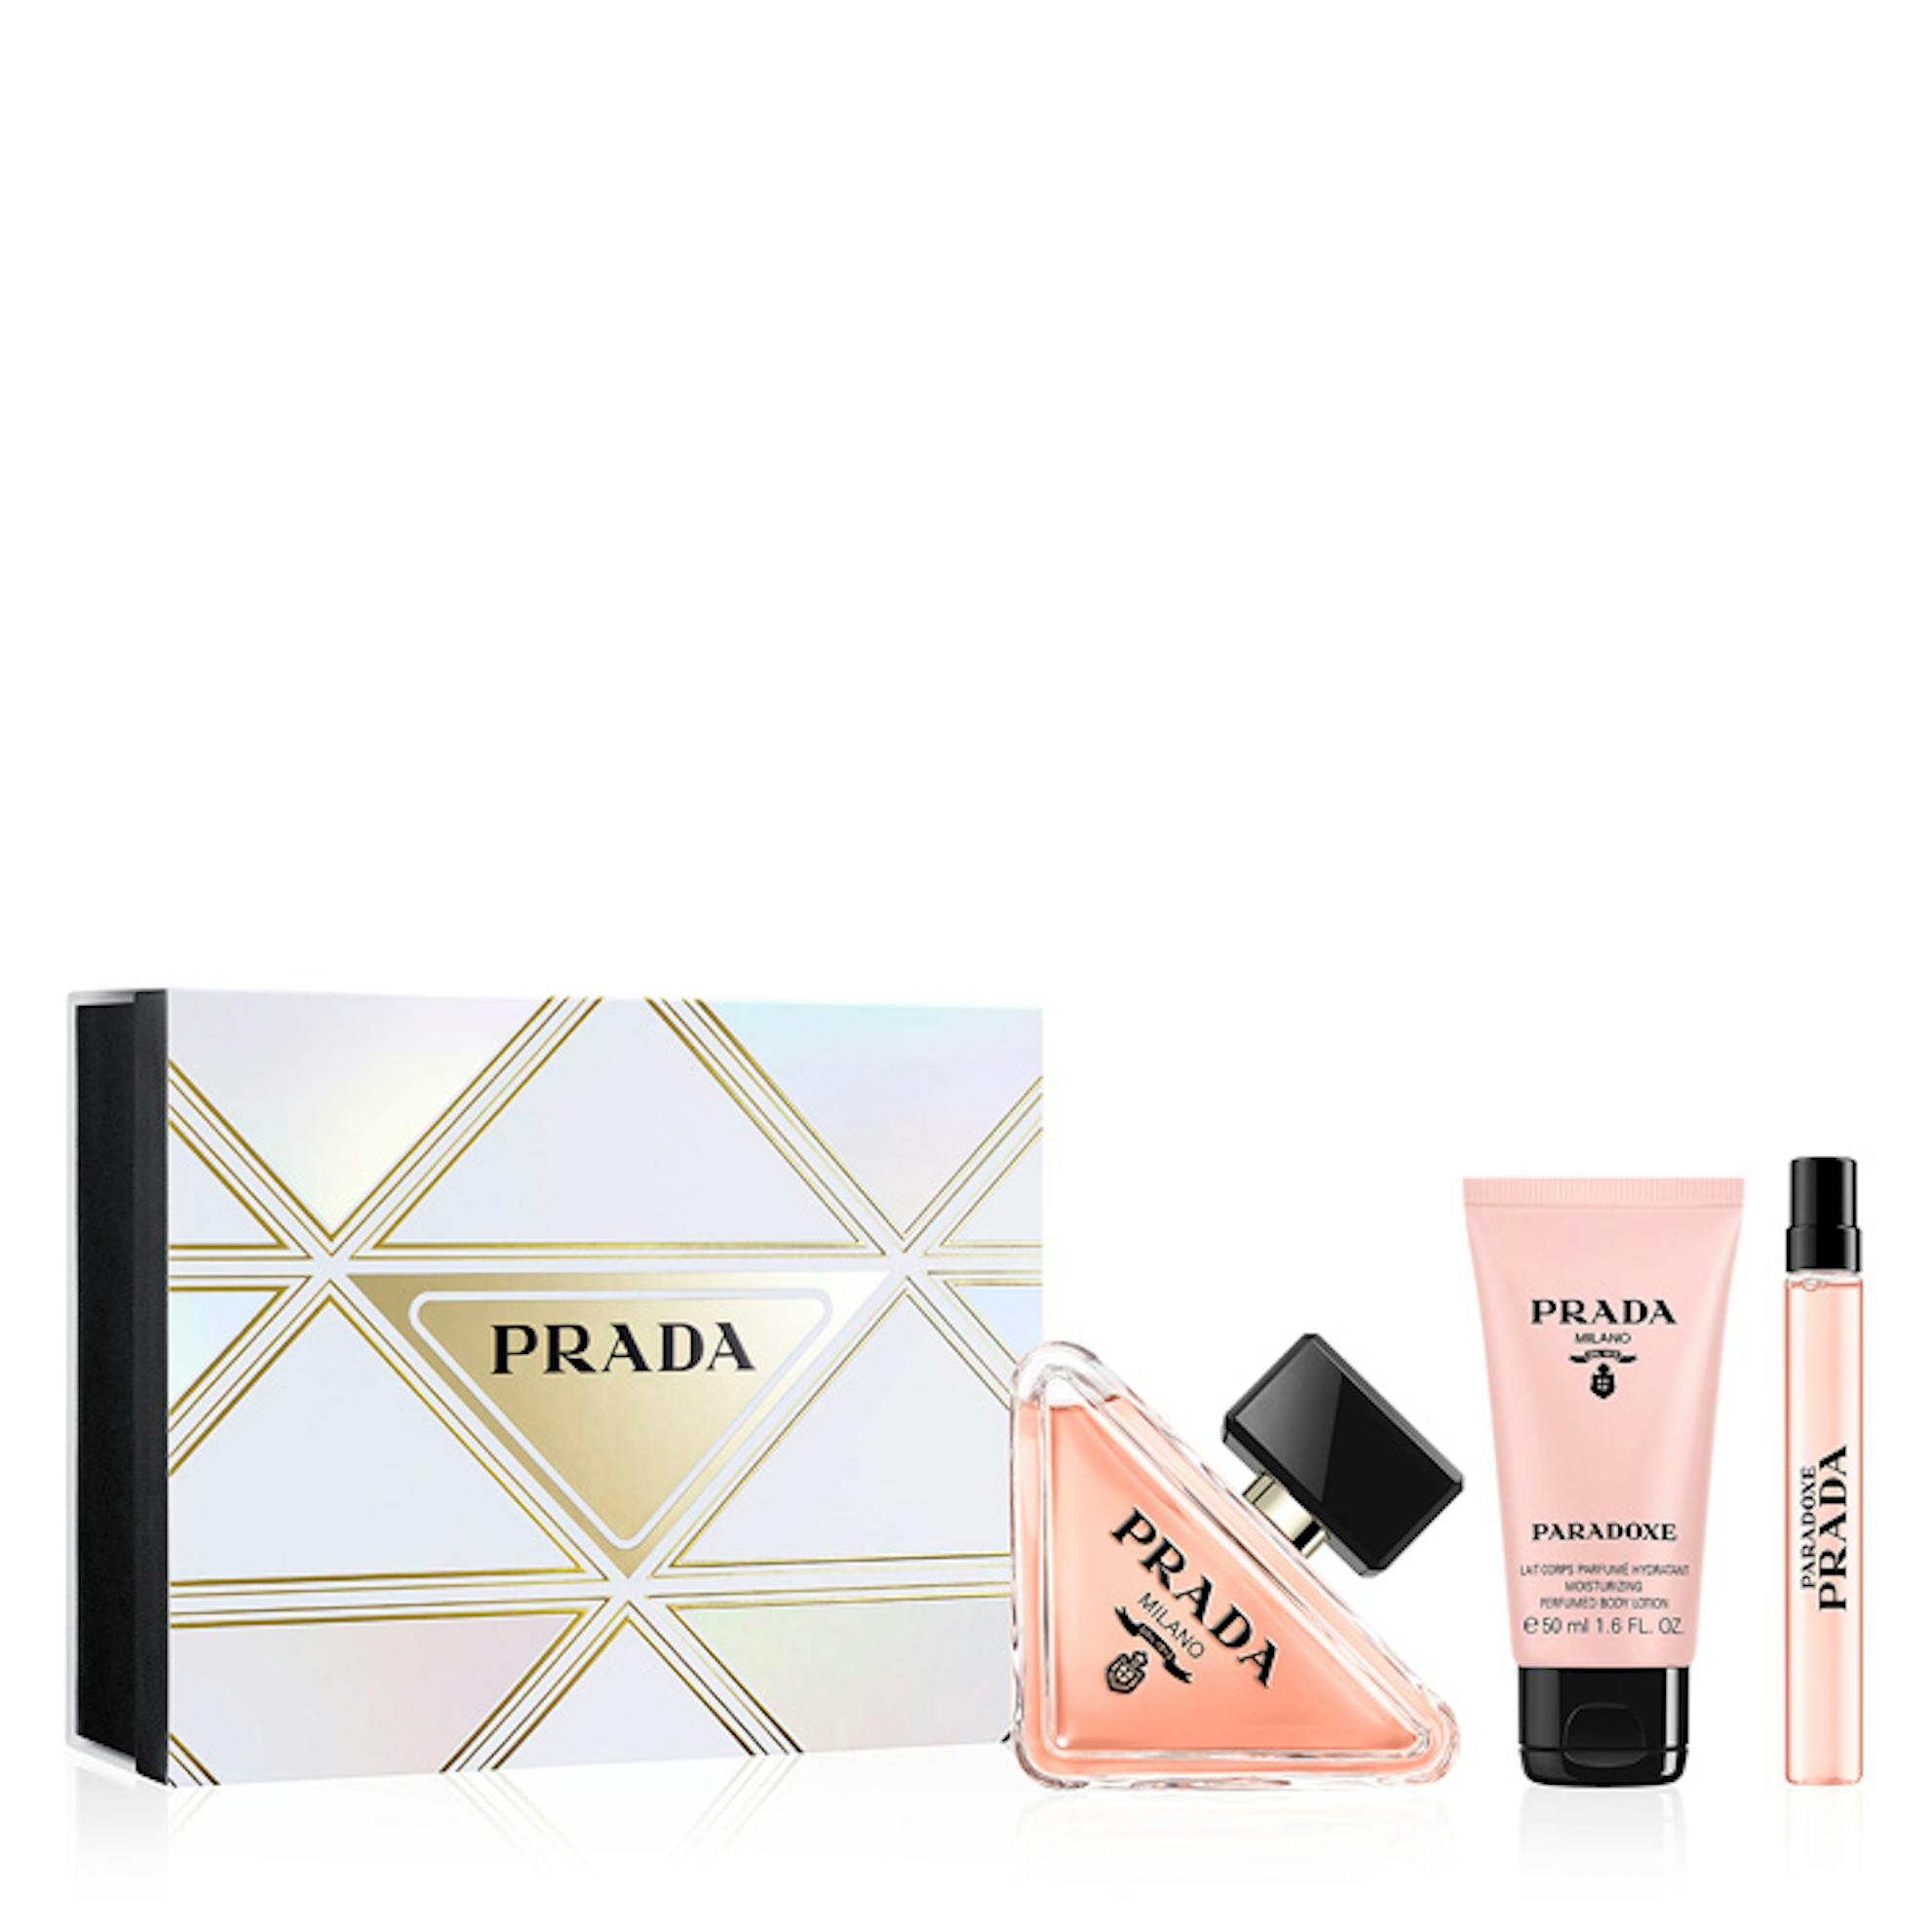 Buy PRADA Paradoxe Eau De Parfum Online